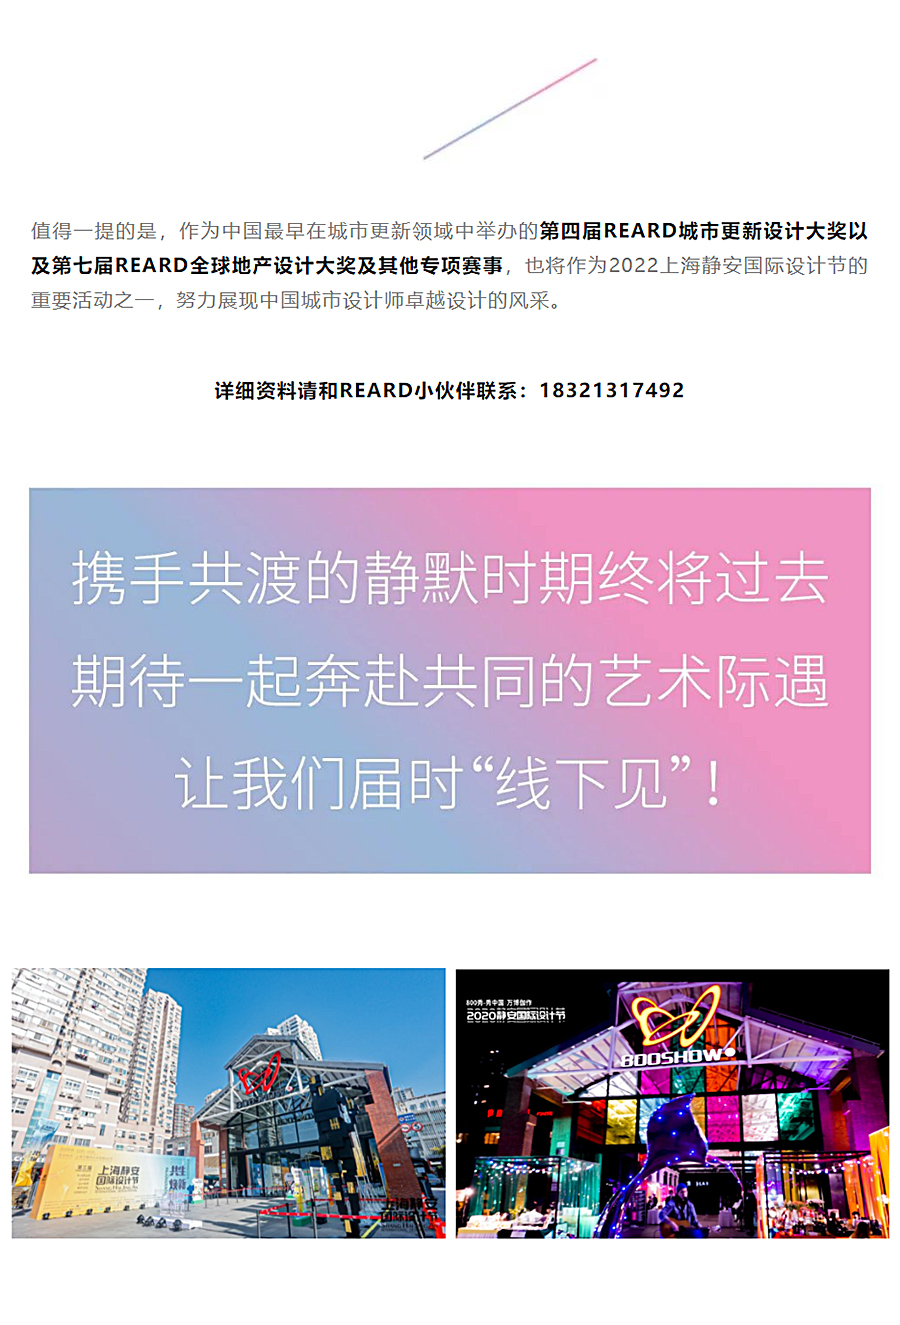 瞰见艺术的力量：上海静安国际设计节｜REARD城市更新设计节来袭_0006_图层-7.jpg